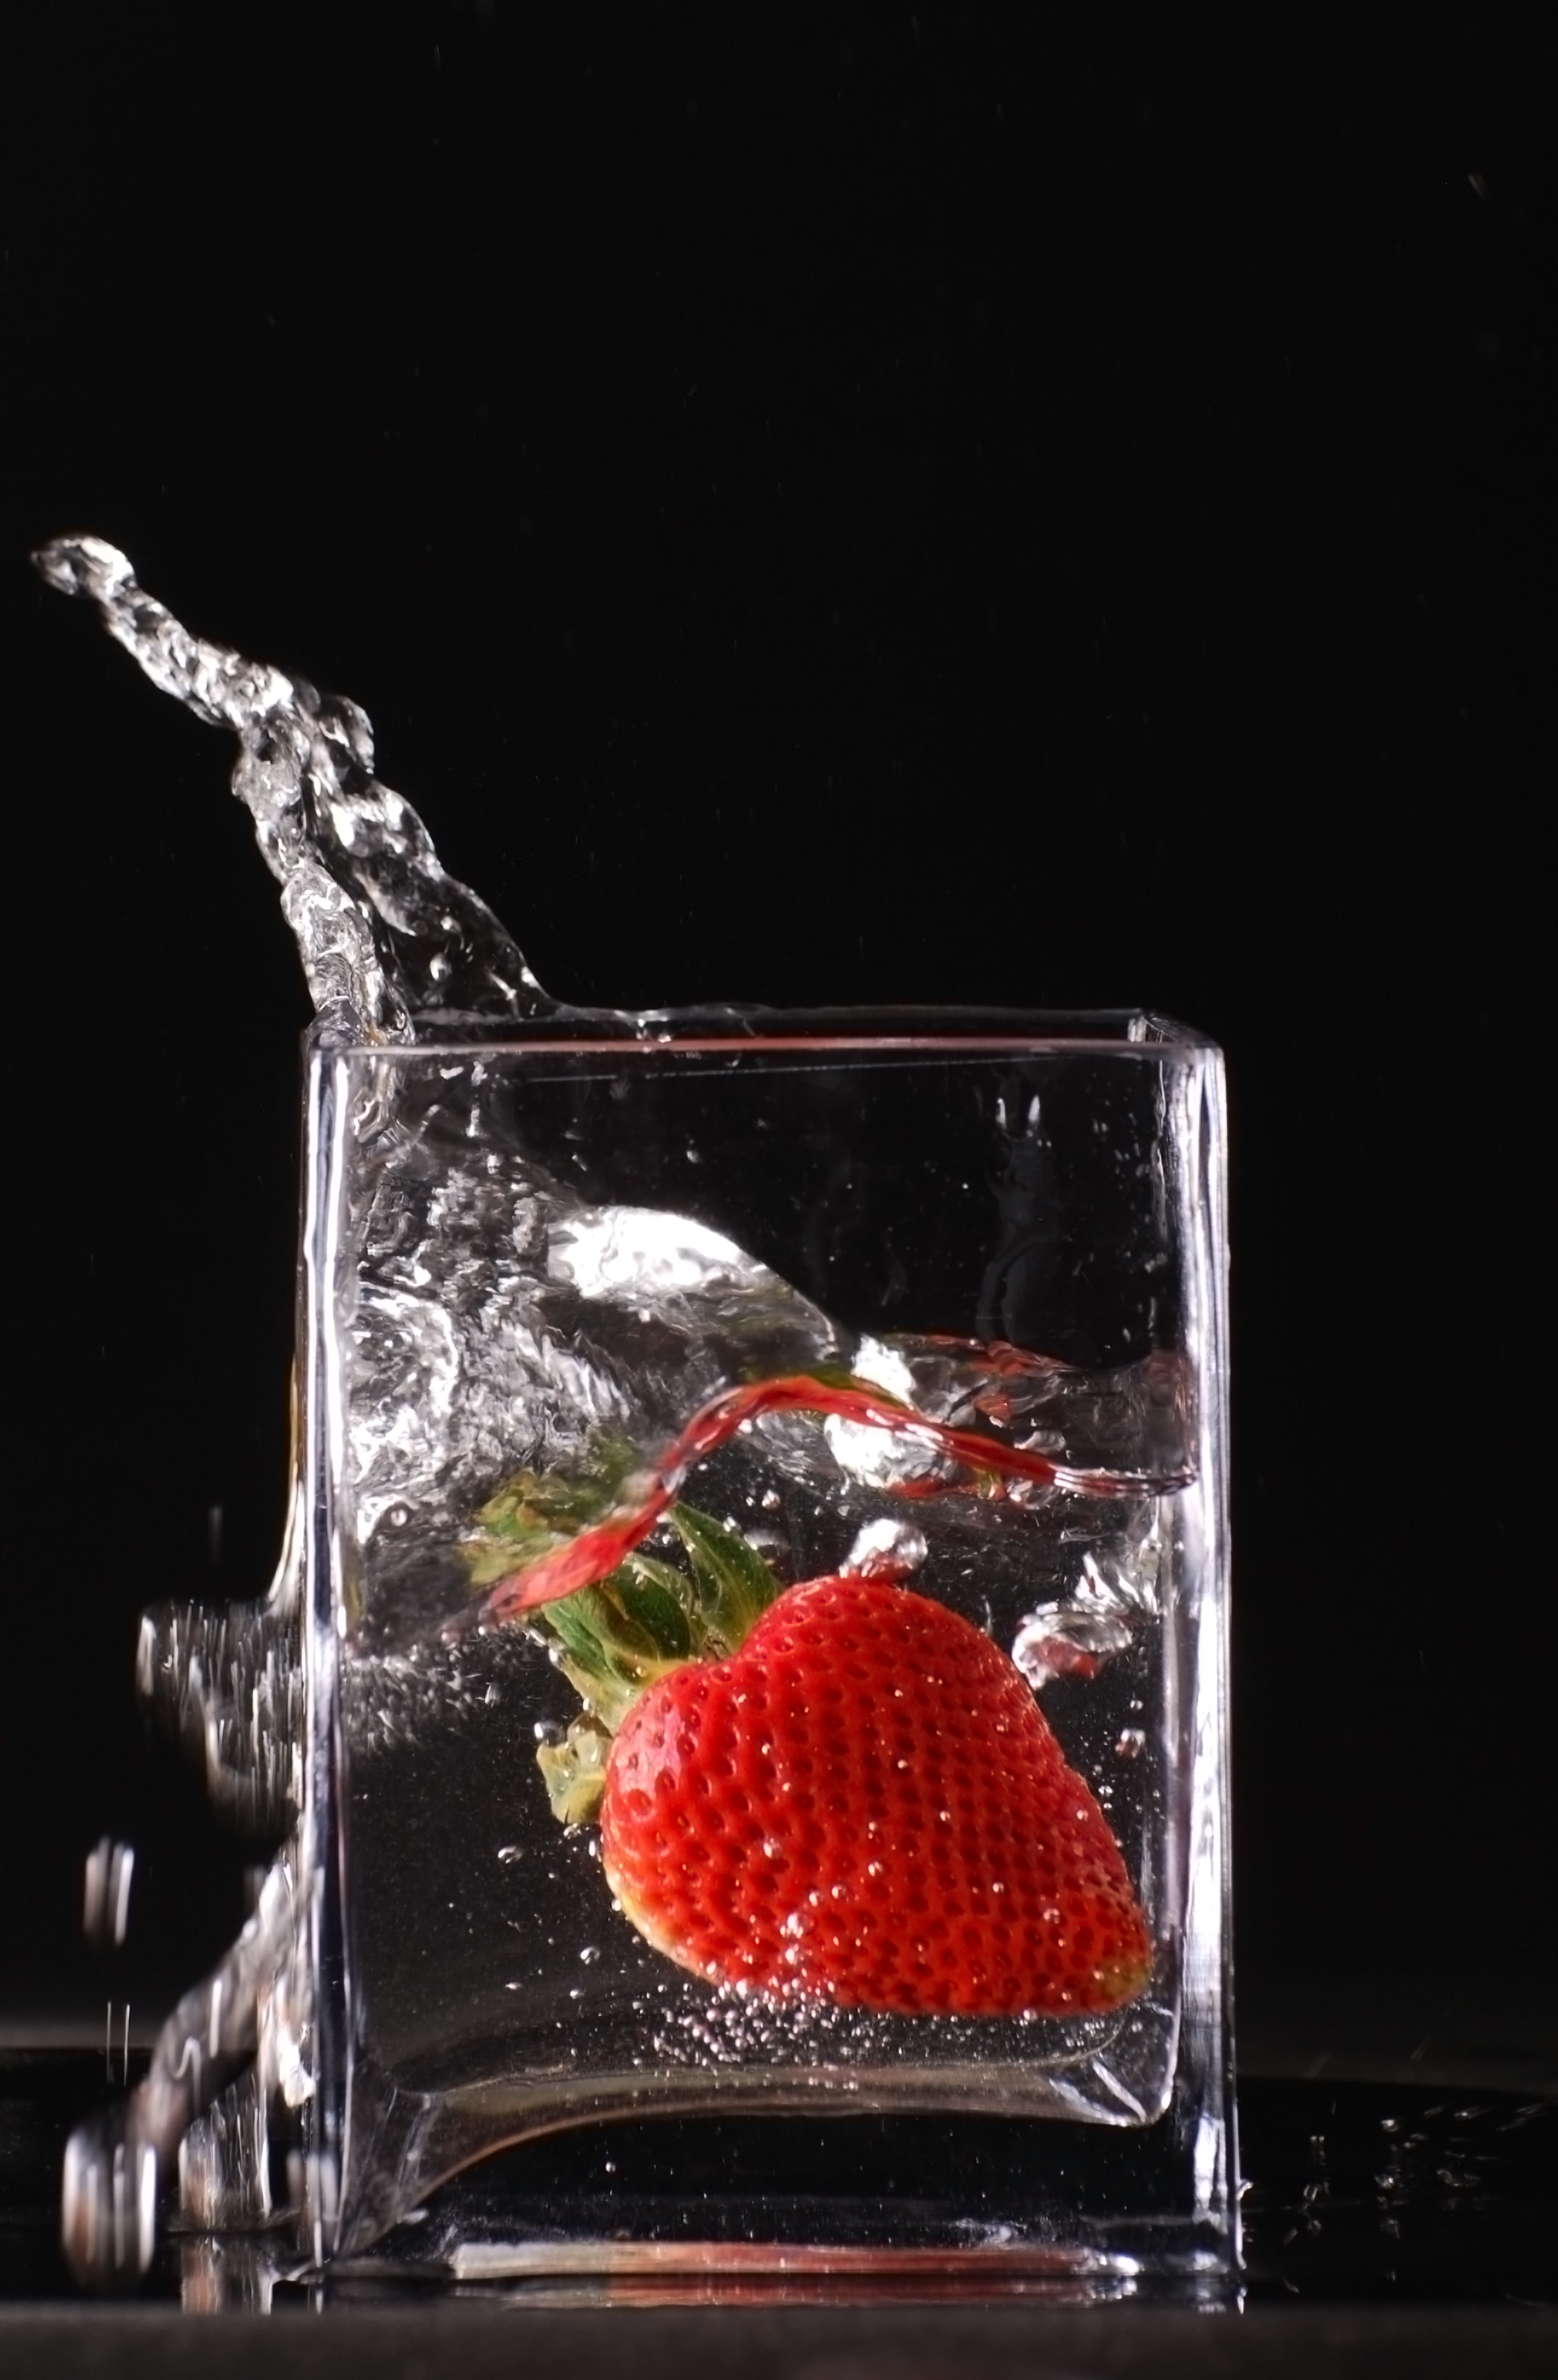 Splashing strawberry photo